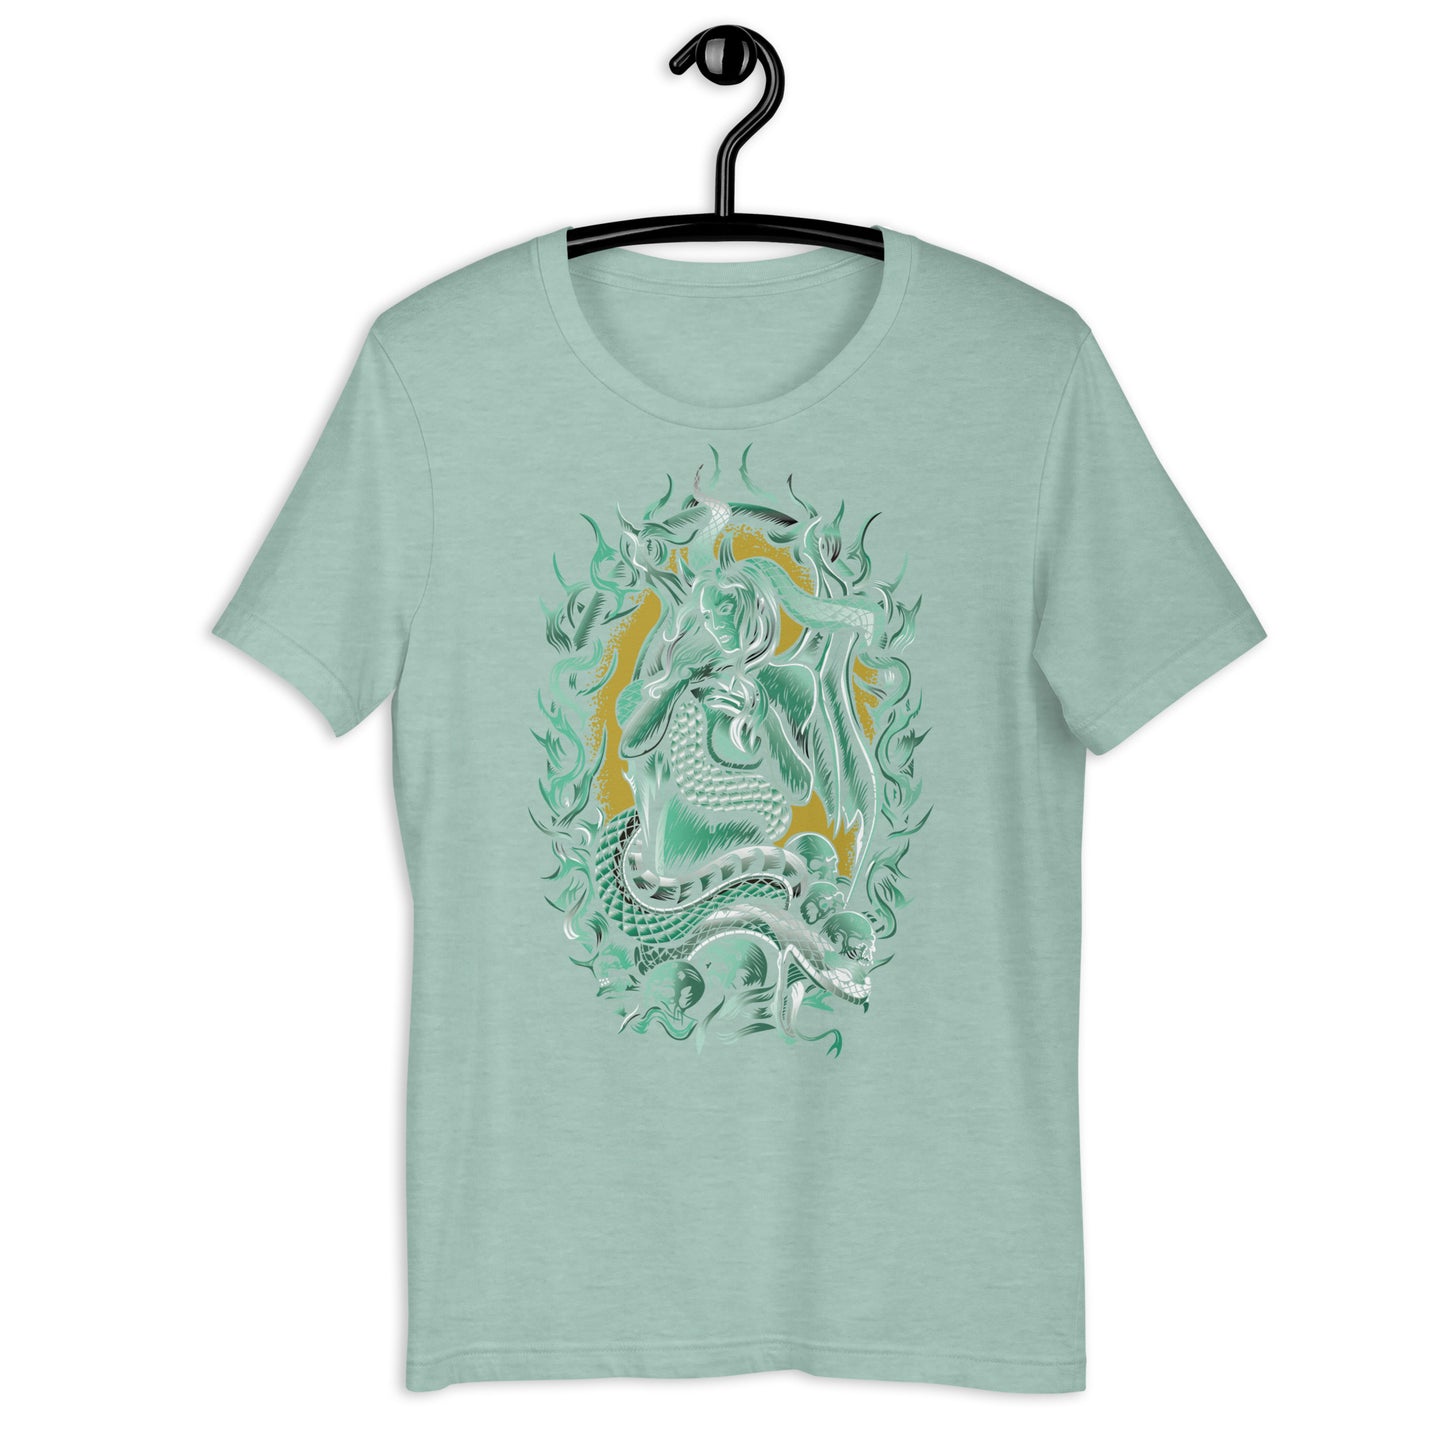 Medusa - Unisex t-shirt